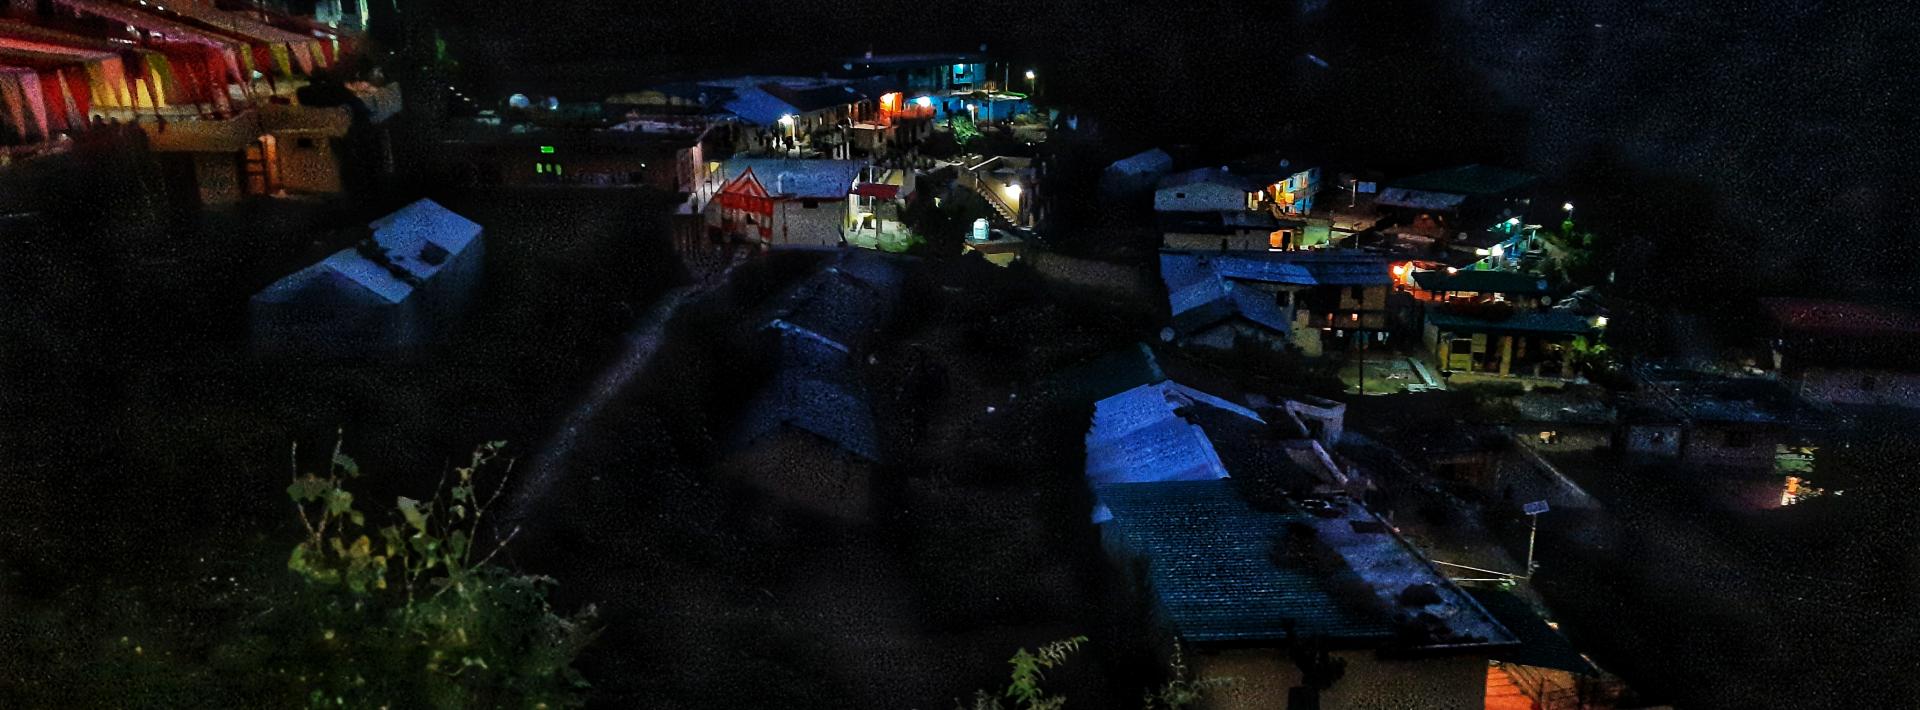 Tehri Districts, Kafulta Village illuminated in Solar light 